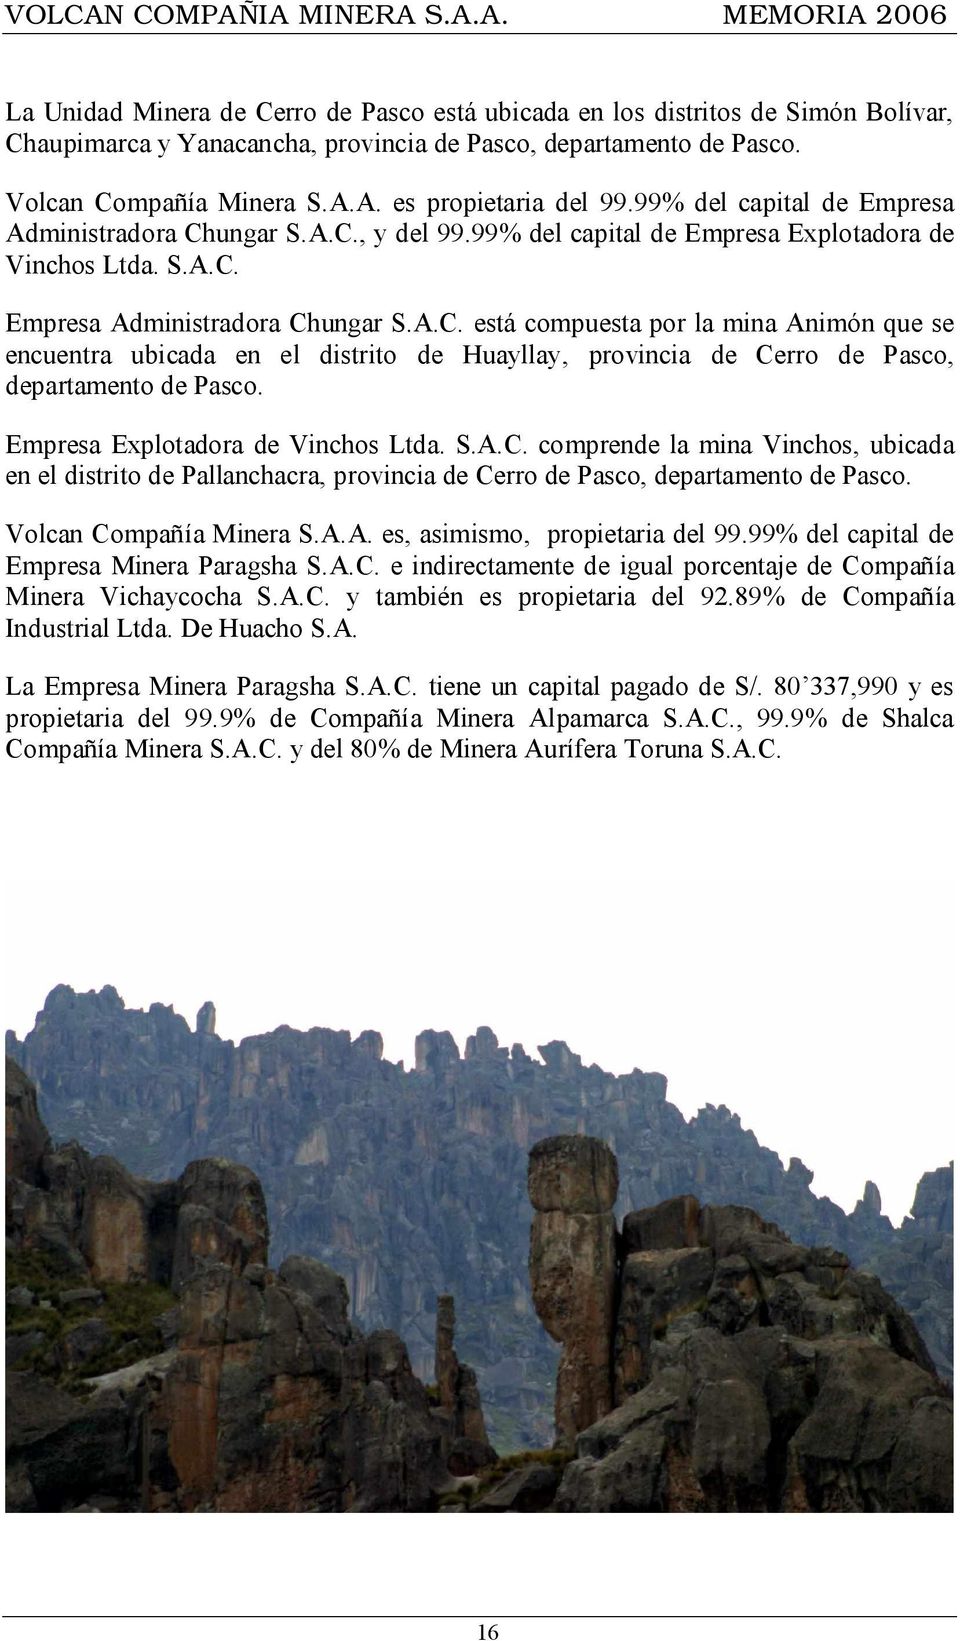 ungar S.A.C., y del 99.99% del capital de Empresa Explotadora de Vinchos Ltda. S.A.C. Empresa Administradora Chungar S.A.C. está compuesta por la mina Animón que se encuentra ubicada en el distrito de Huayllay, provincia de Cerro de Pasco, departamento de Pasco.